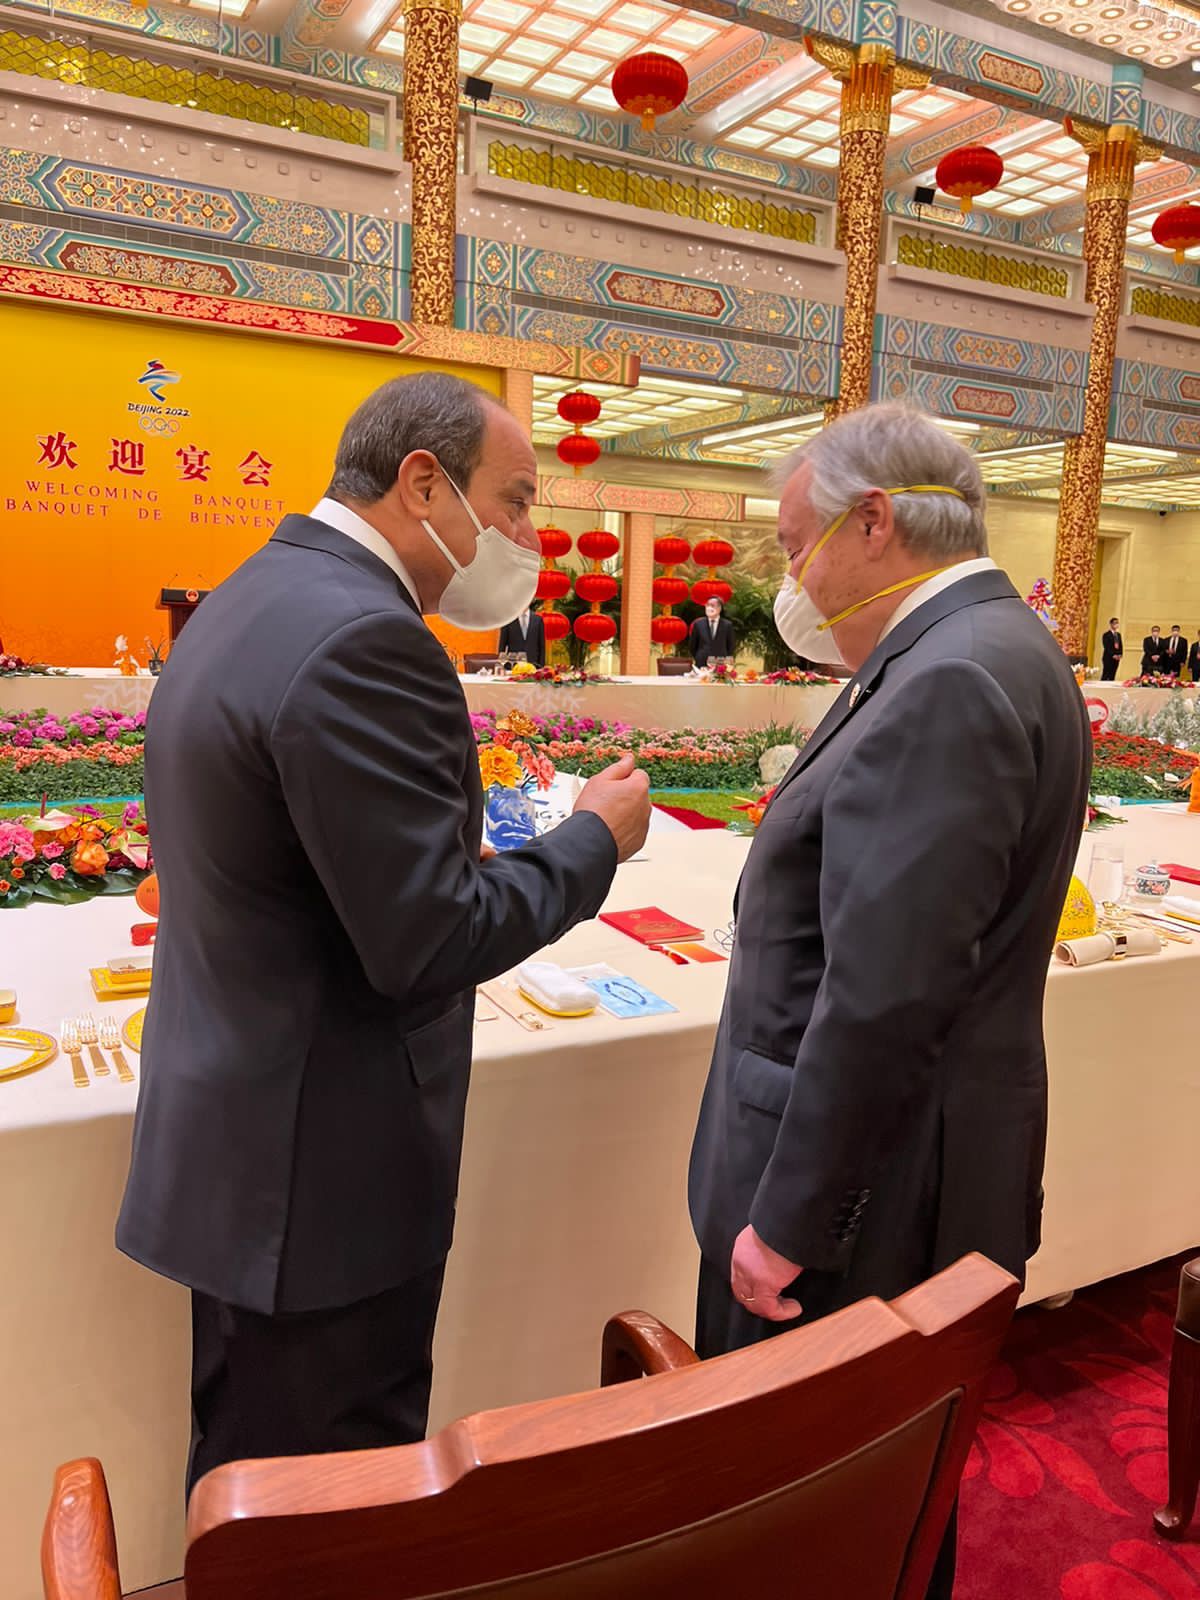 مأدبة غداء الرئيس الصيني تجمع الرئيس السيسى وأمير قطر وبن زايد وسكرتير الأمم المتحد (5)